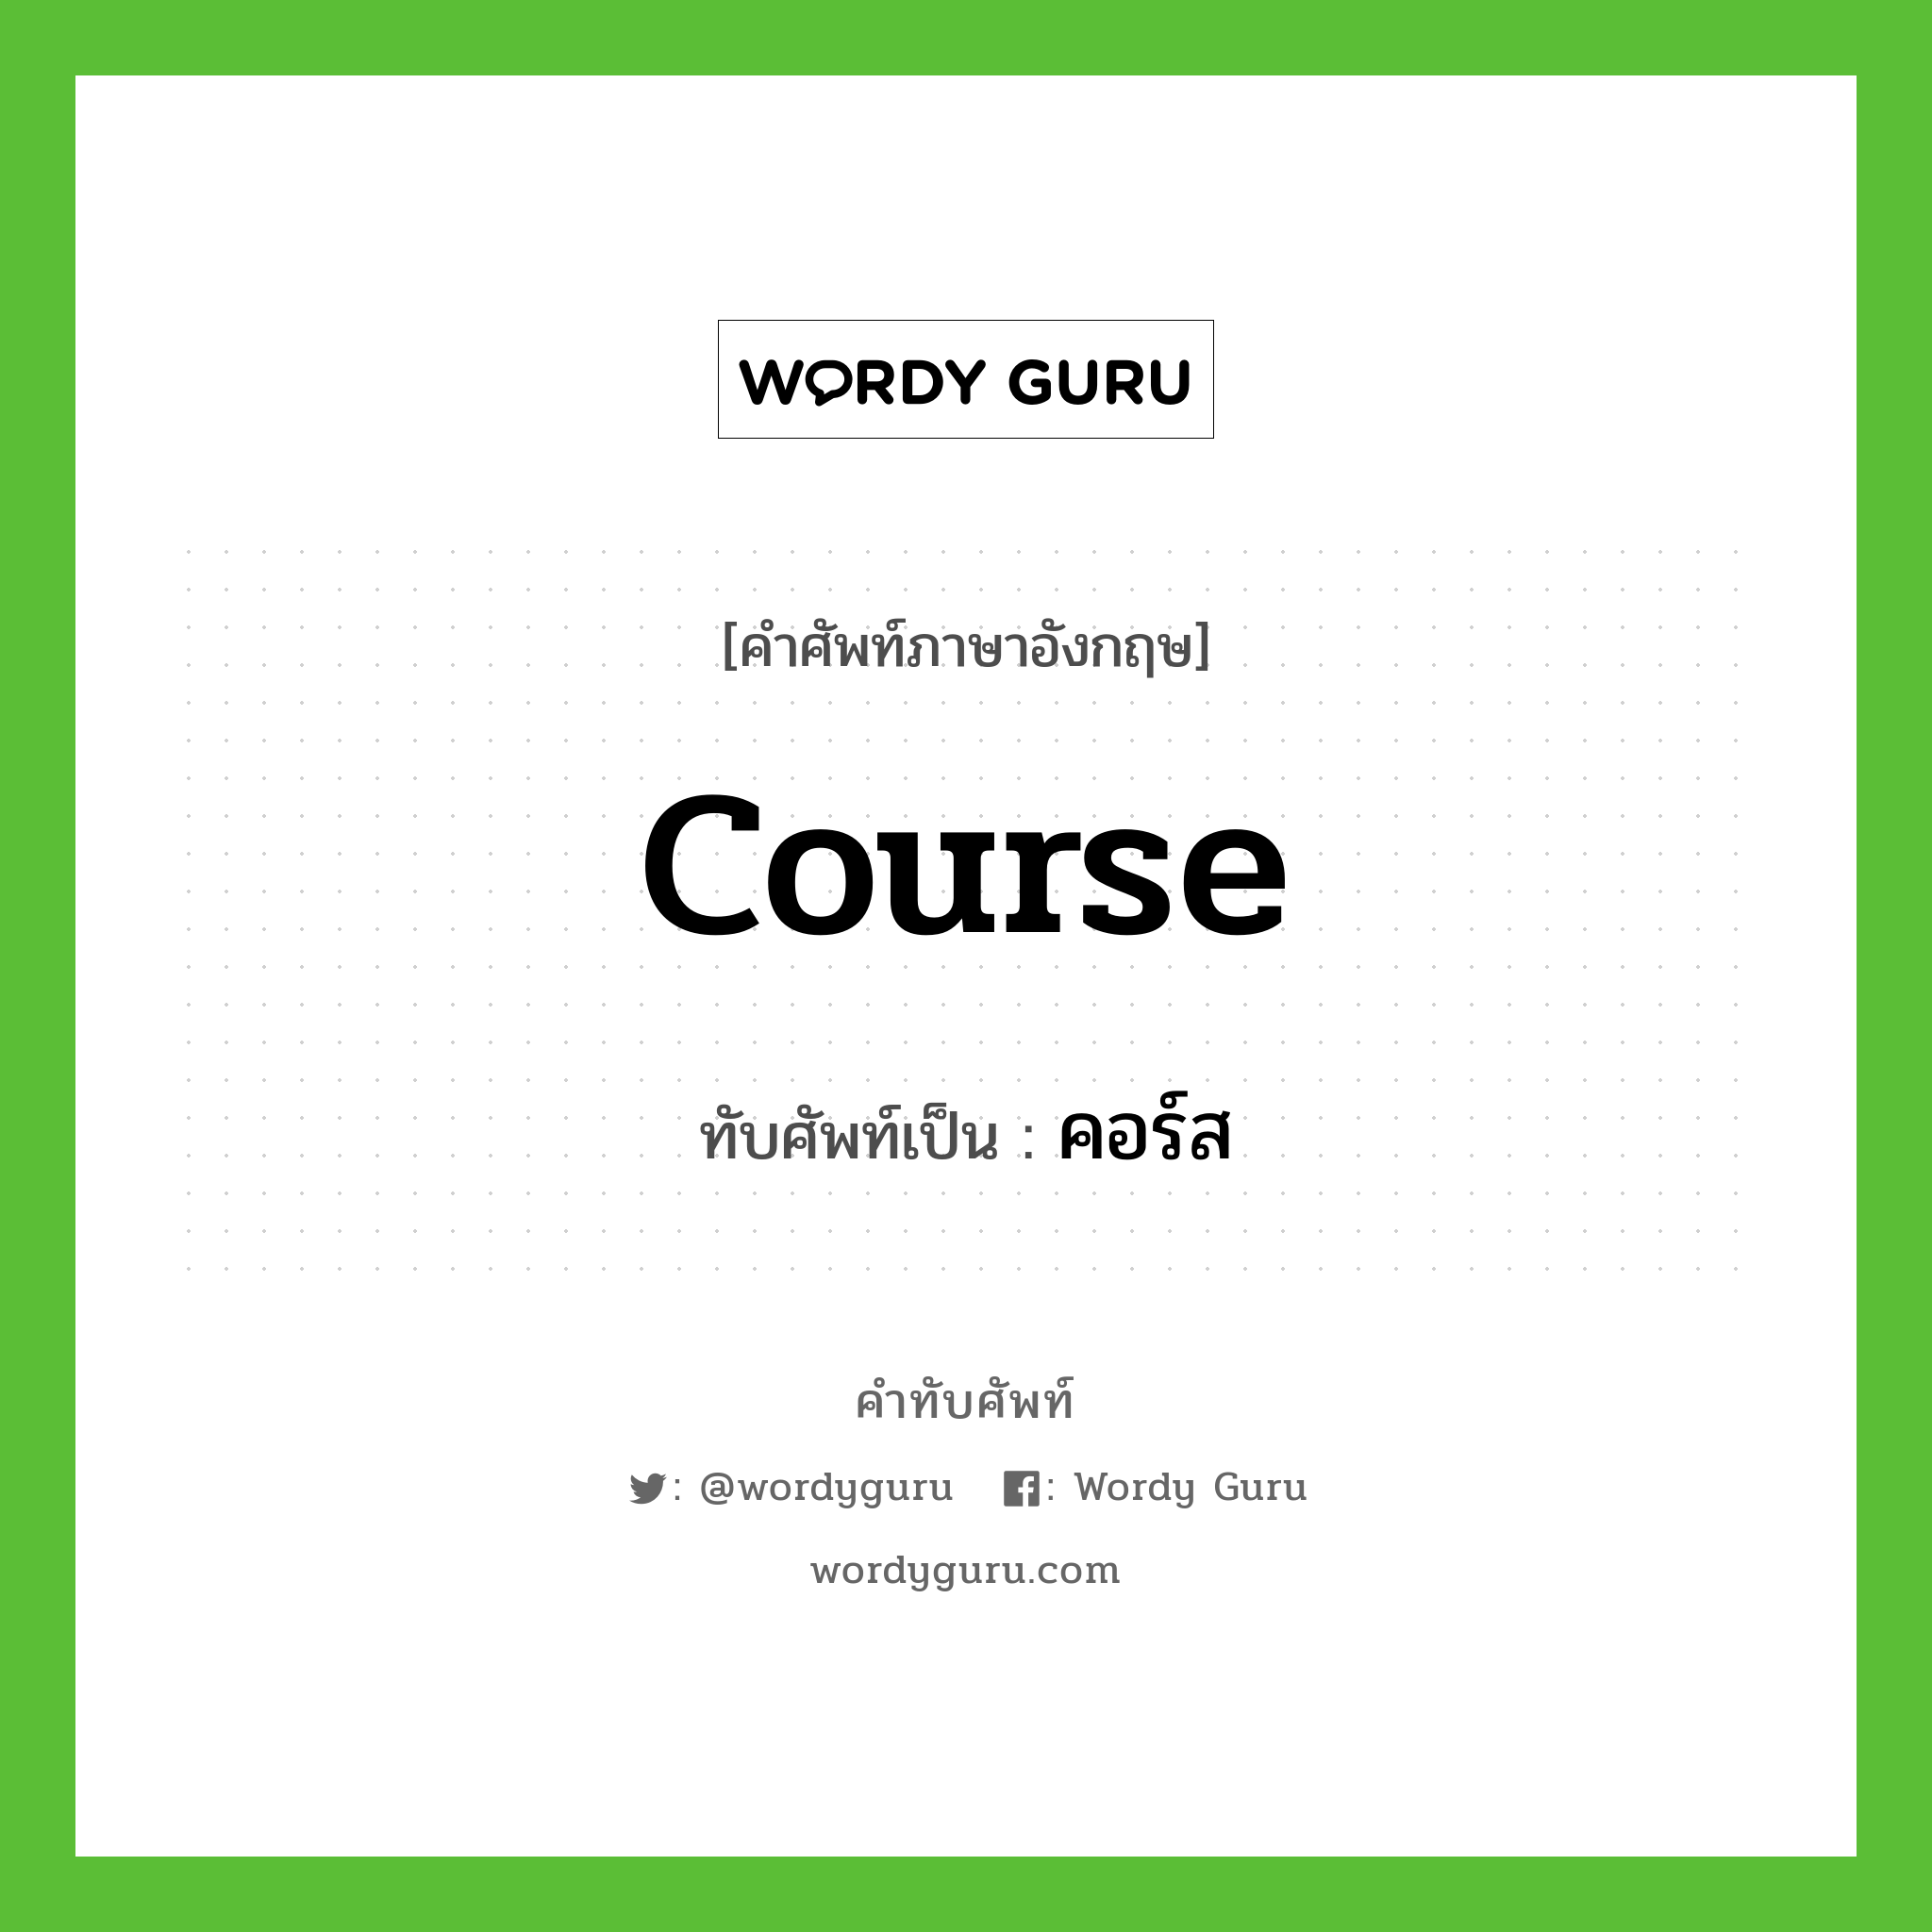 course เขียนเป็นคำไทยว่าอะไร?, คำศัพท์ภาษาอังกฤษ course ทับศัพท์เป็น คอร์ส